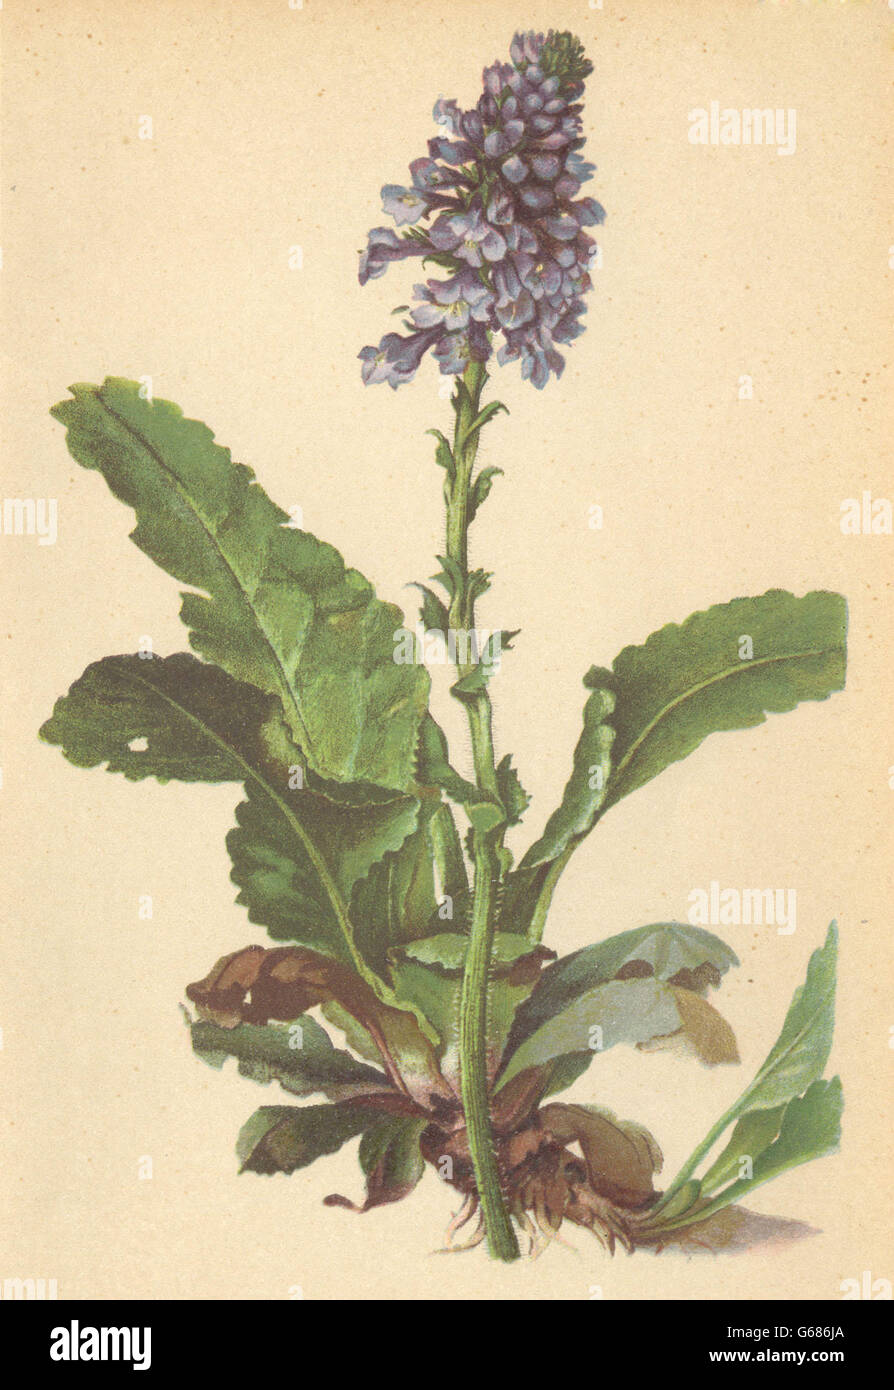 ALPENFLORA ALPINE FLOWERS: Wulfenia carinthiaca Jacq-Wulfenie, old print 1897 Stock Photo